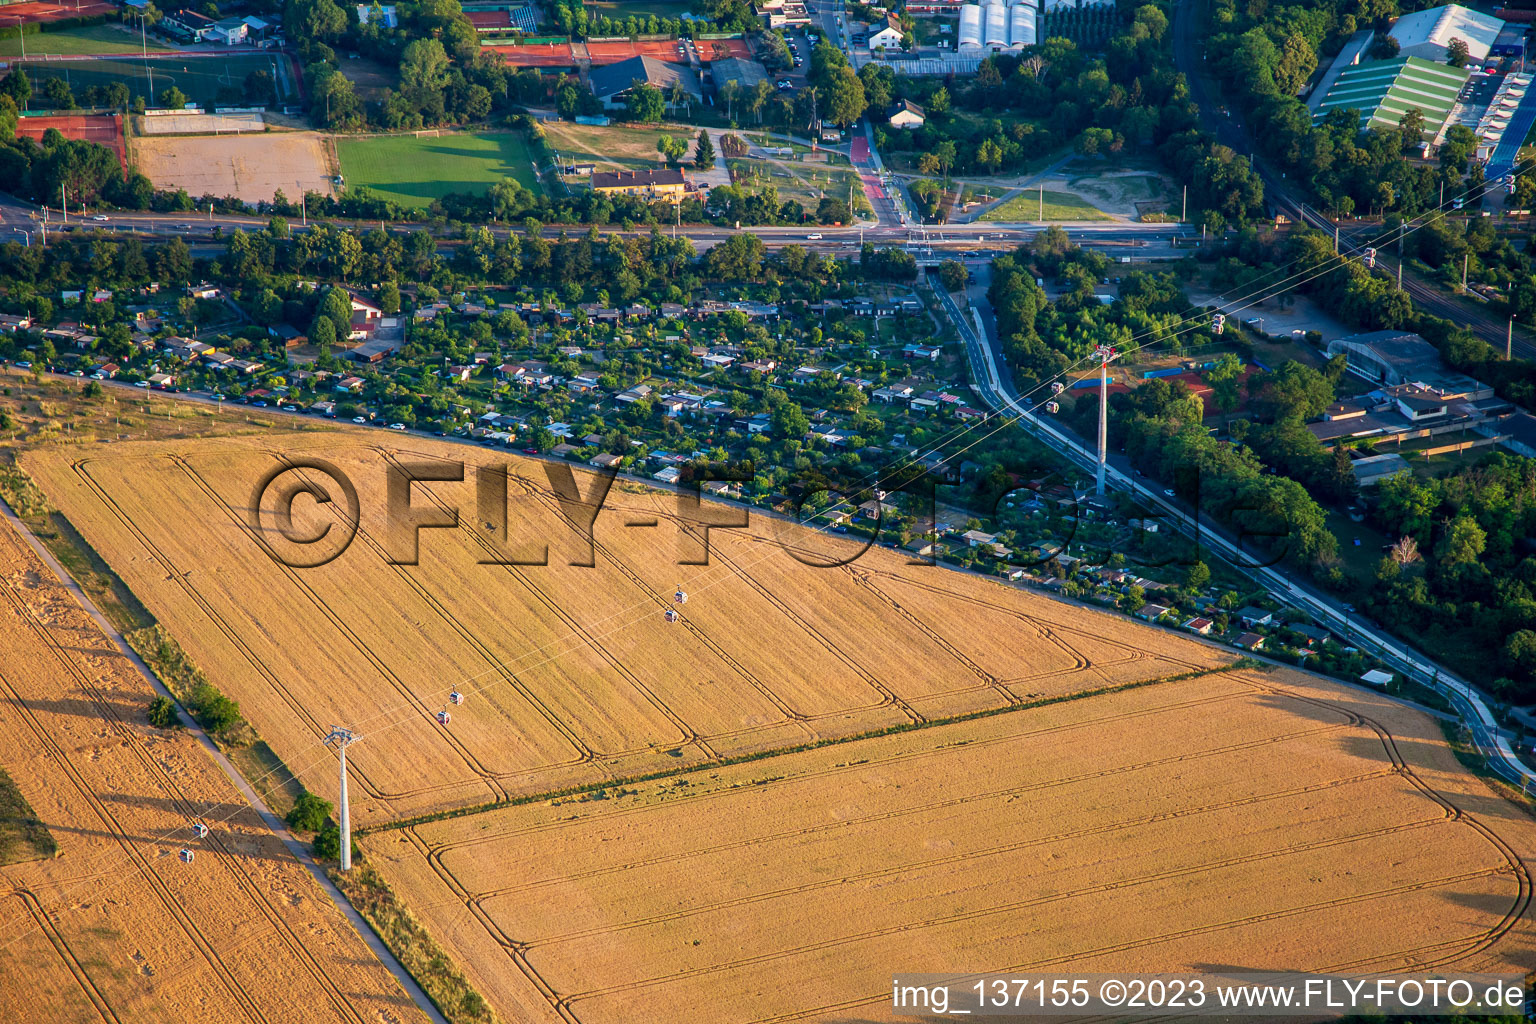 Photographie aérienne de Téléphérique de Spinelli au parc Luisen du Salon fédéral des jardins Mannheim BUGA 2023 à le quartier Feudenheim in Mannheim dans le département Bade-Wurtemberg, Allemagne